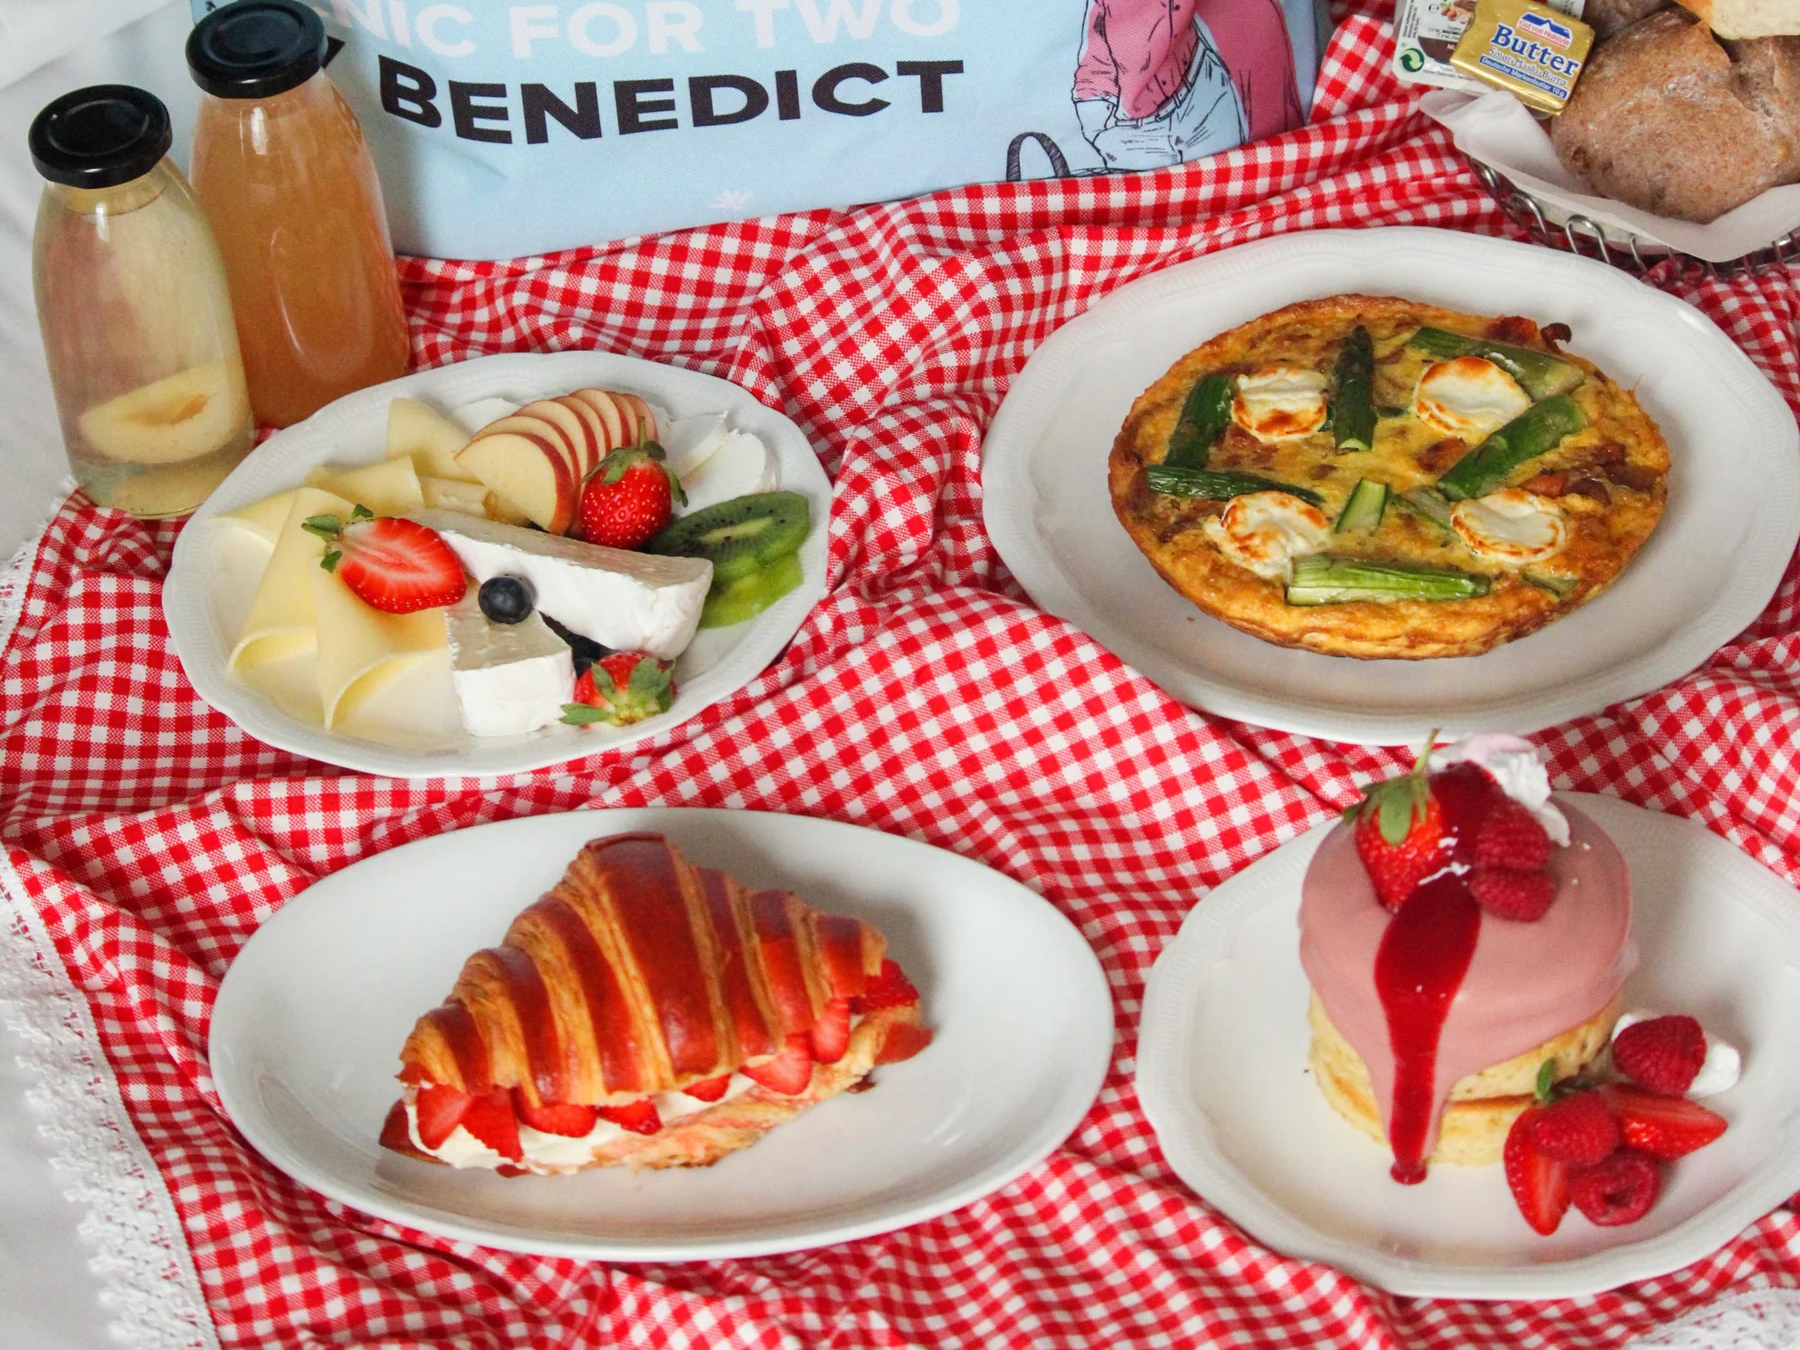 Tolle Idee zum Valentinstag: Ein Picknick vom Frühstücksprofi Benedict.